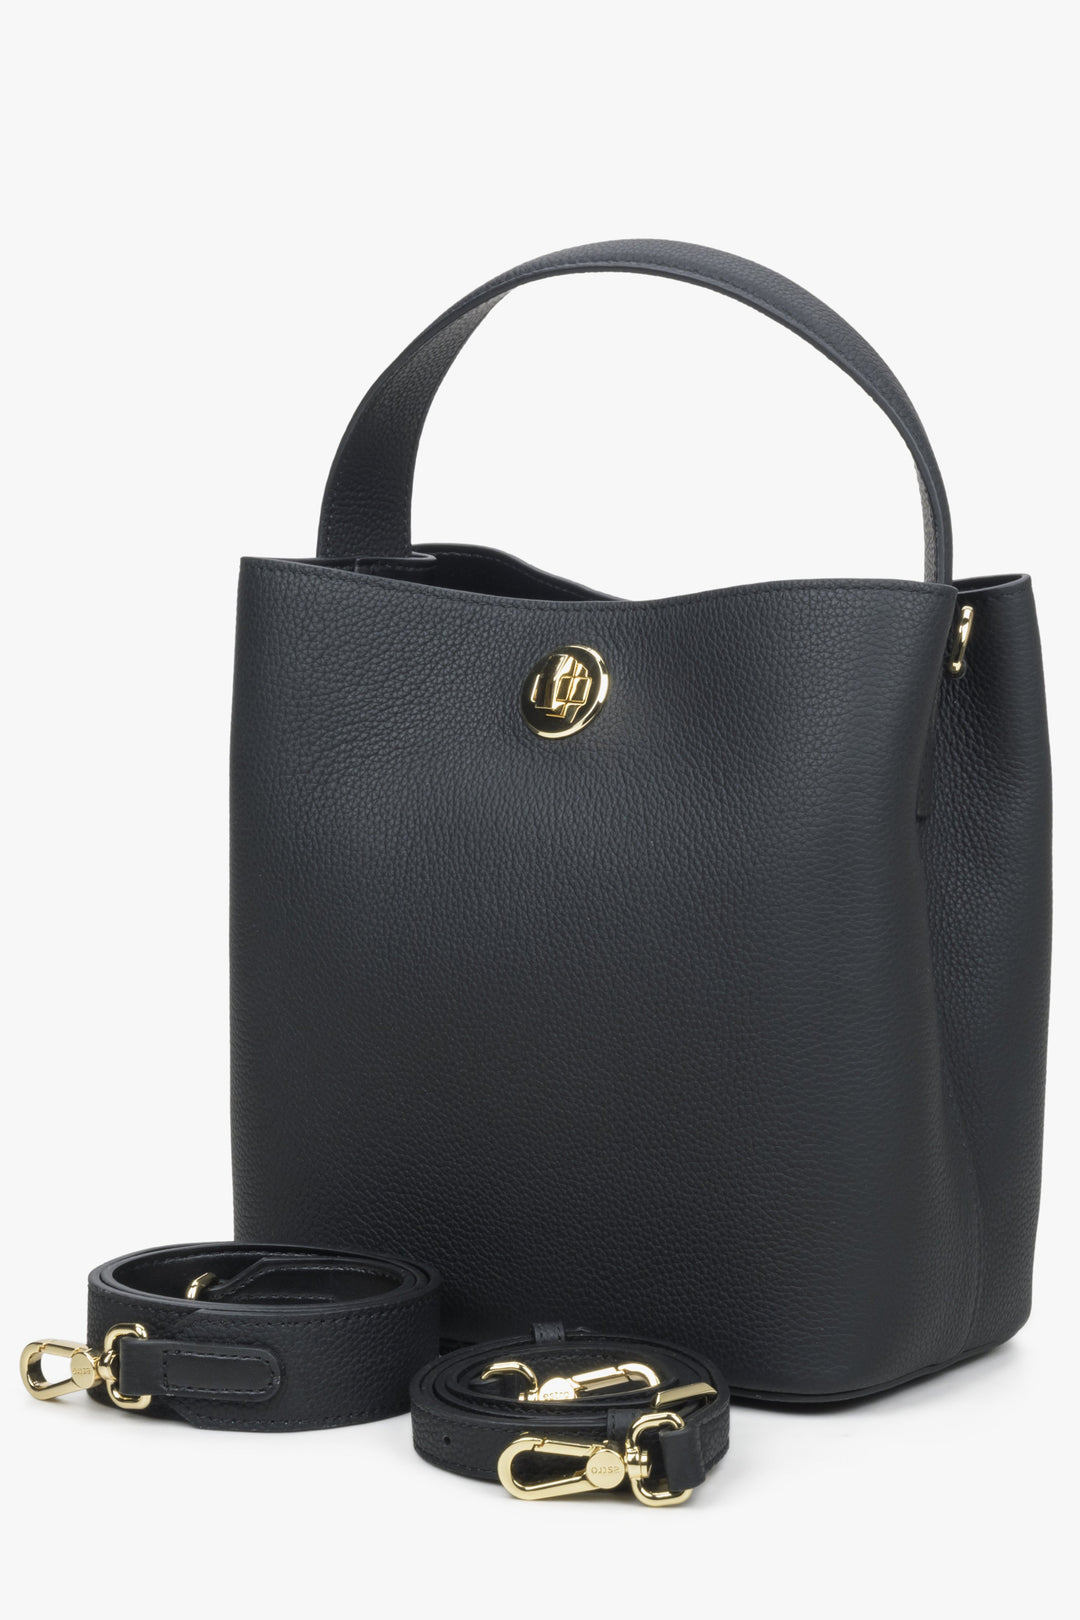 Estro women's black handbag.